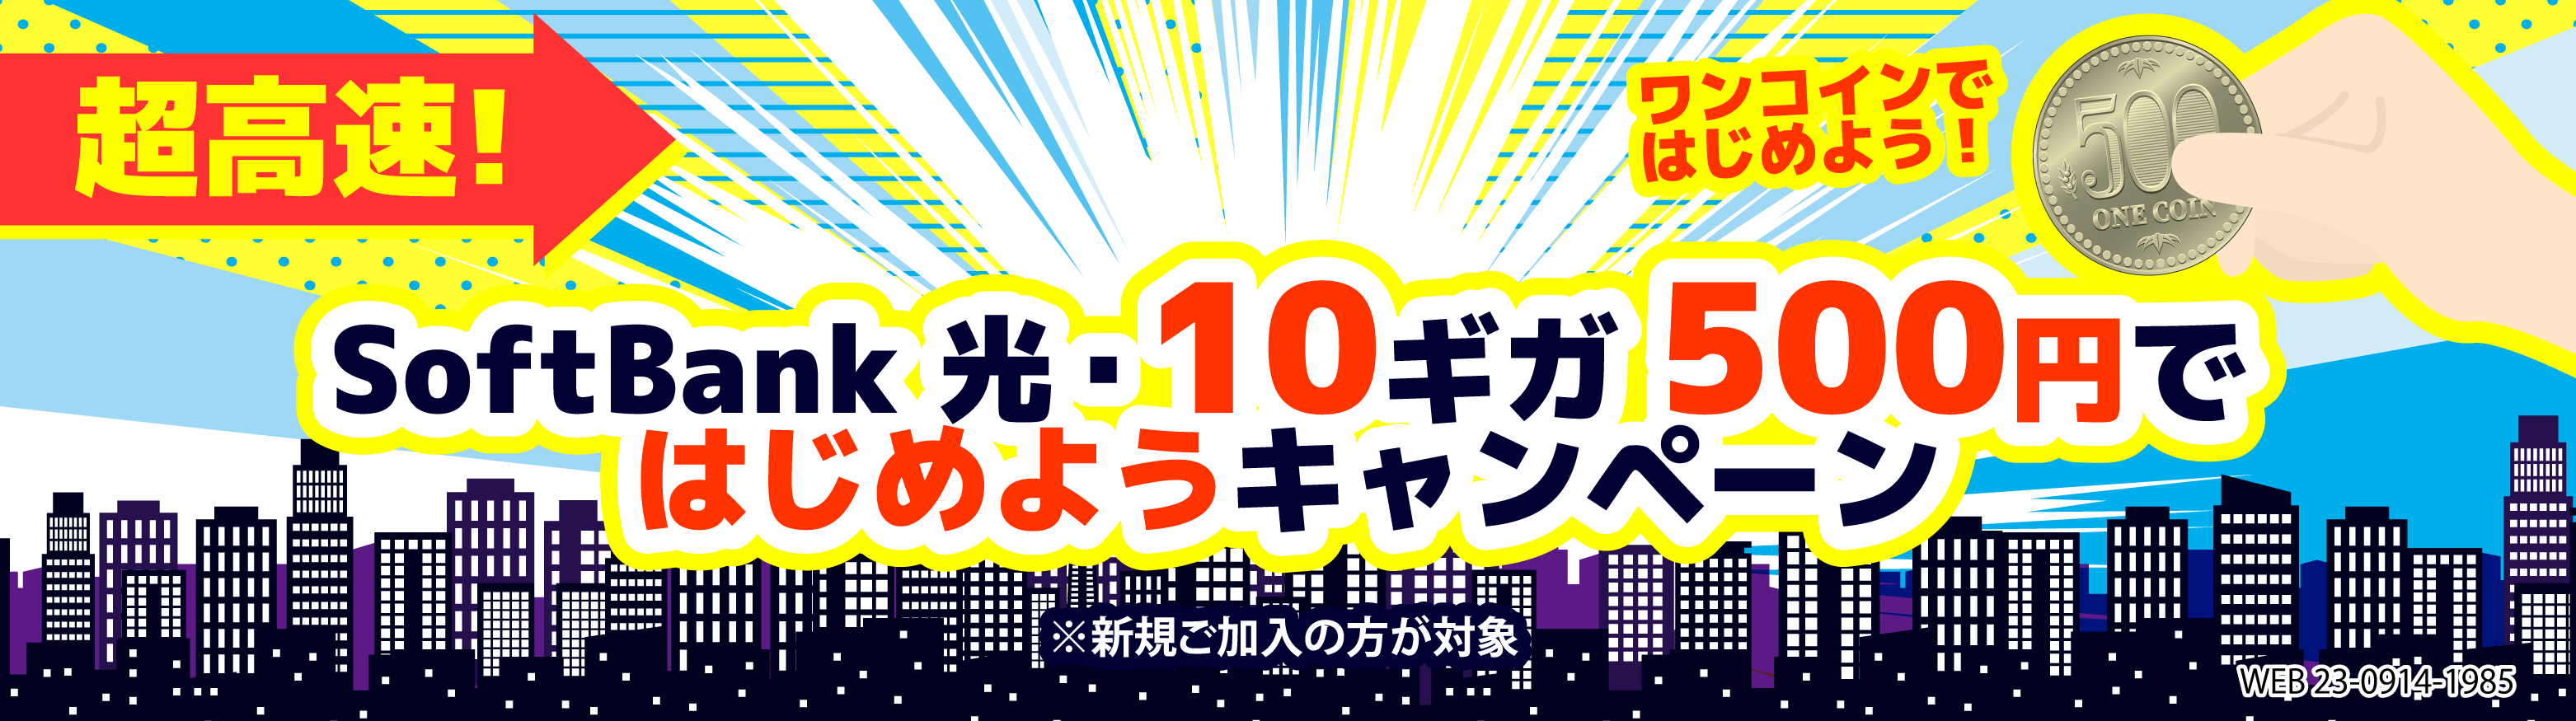 SoftBank光・10ギガ500円で始めようキャンペーン